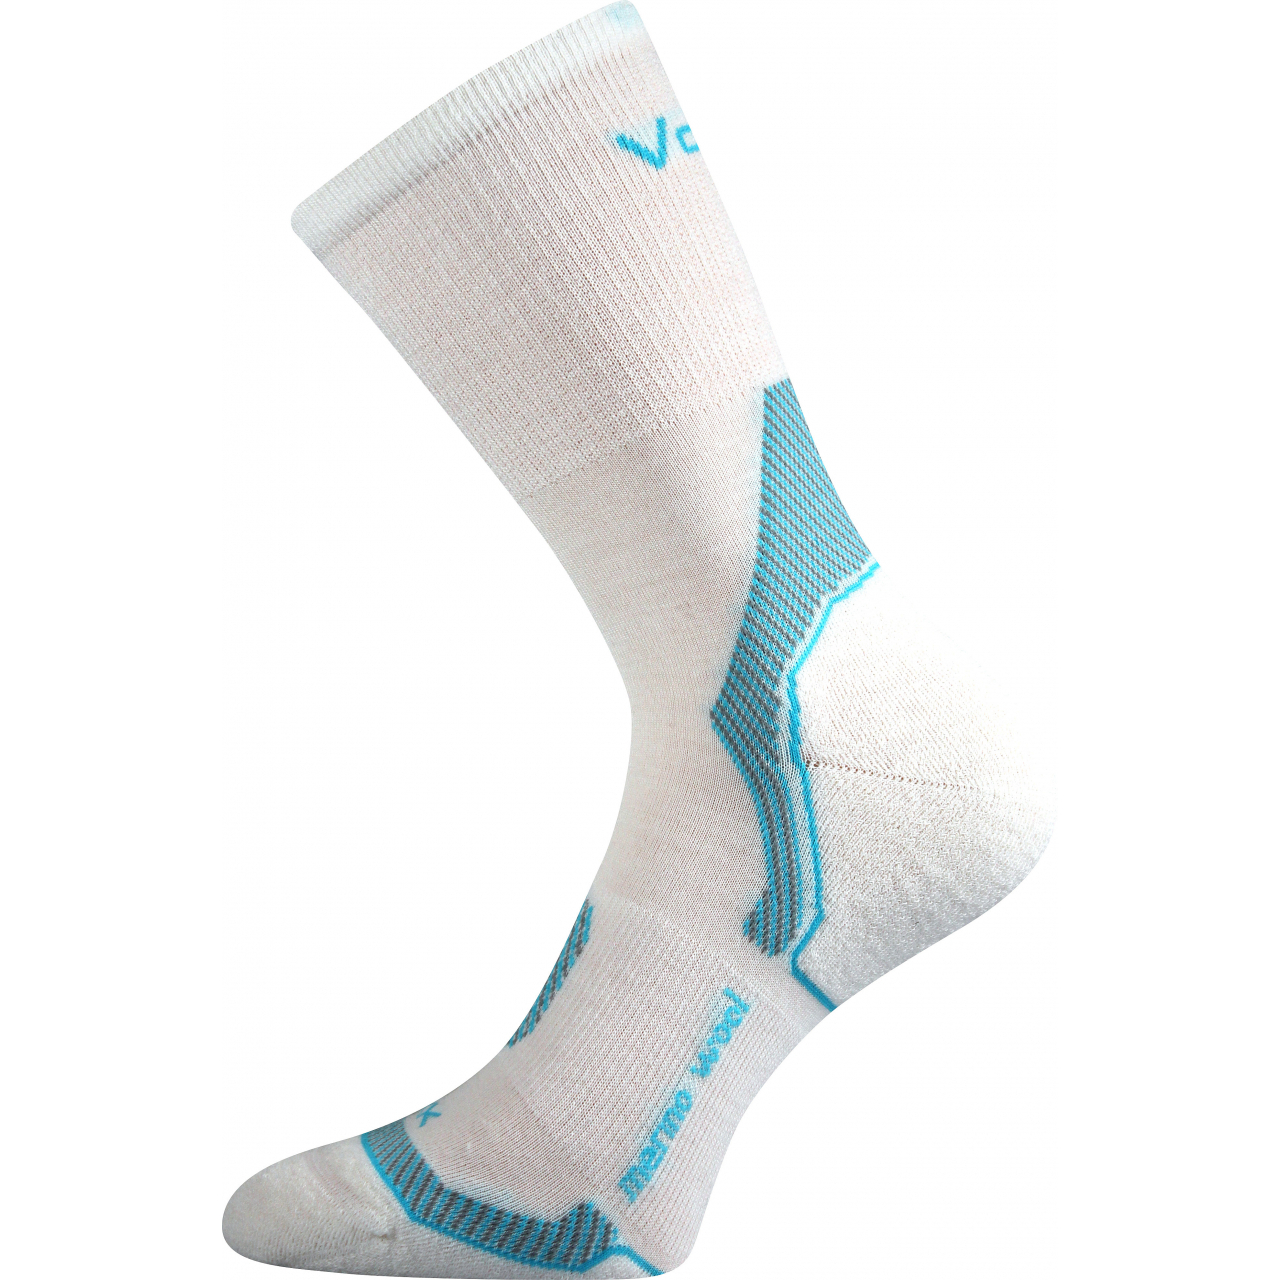 Ponožky unisex vlněné Voxx Indy - bílé-modré, 39-42